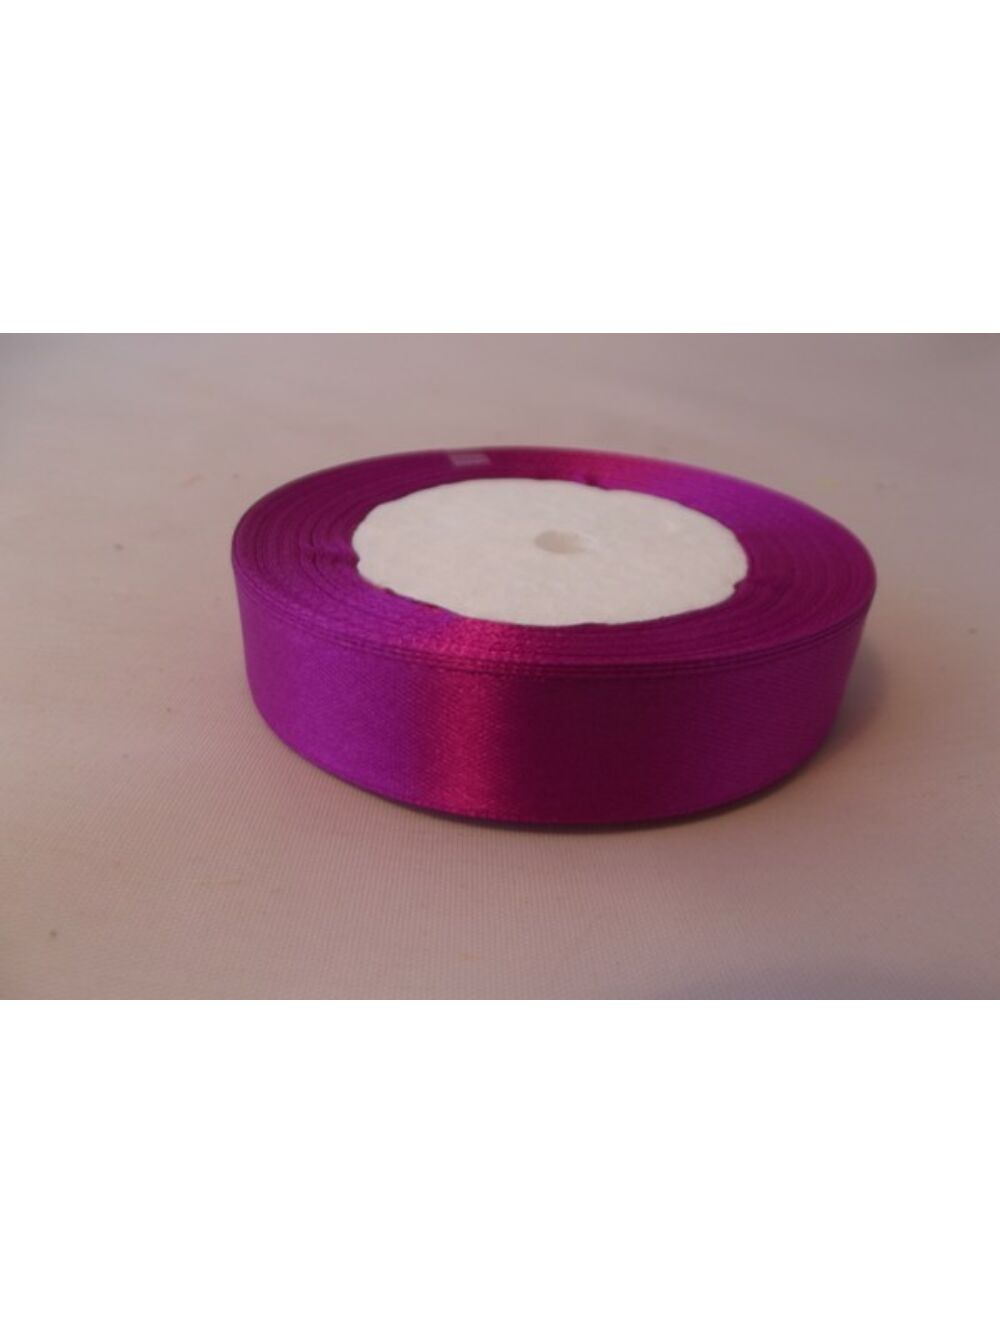 20 mm-es szatén szalag - Közép lila